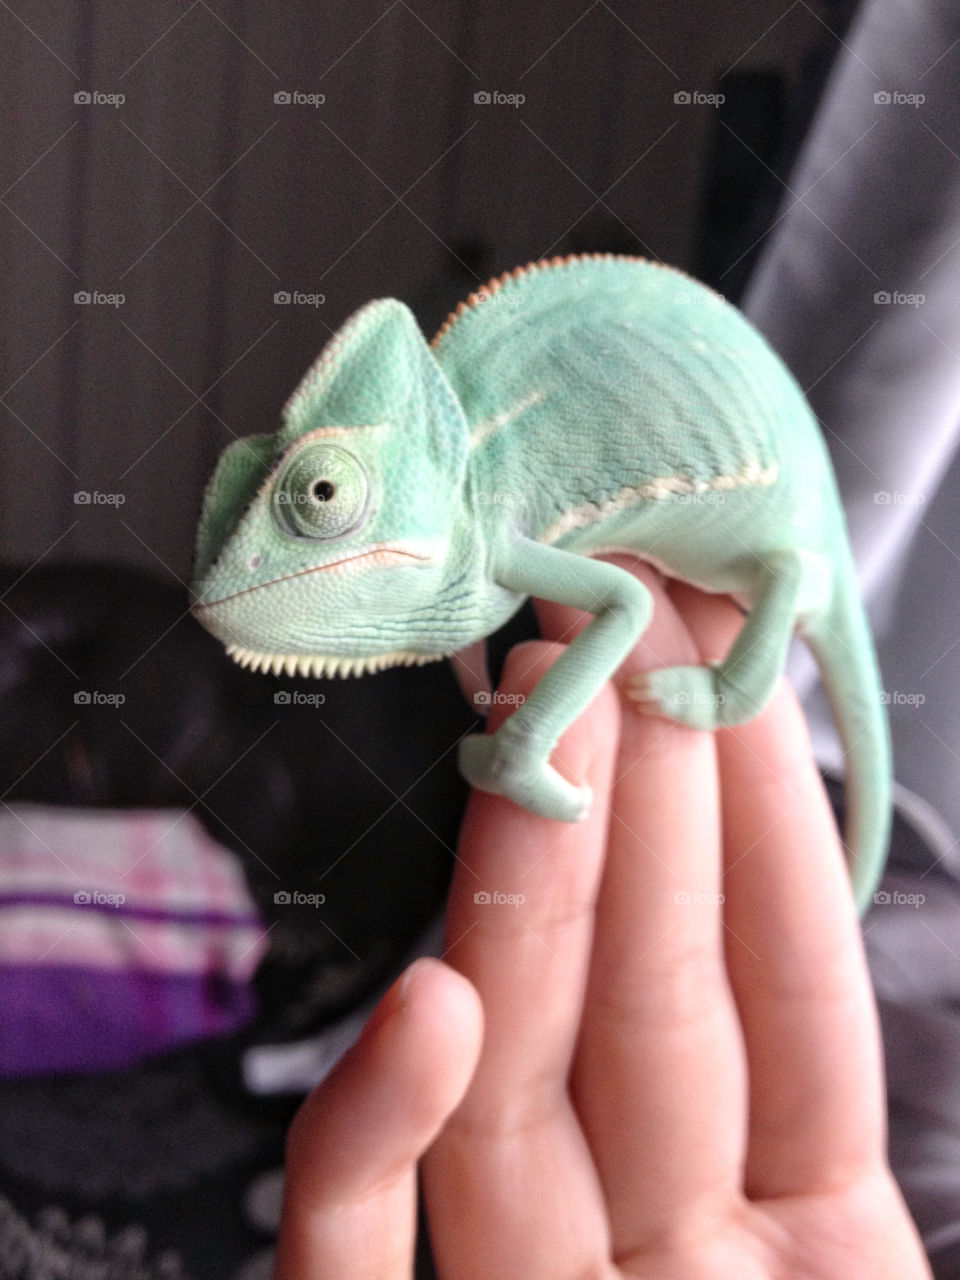 My chameleon